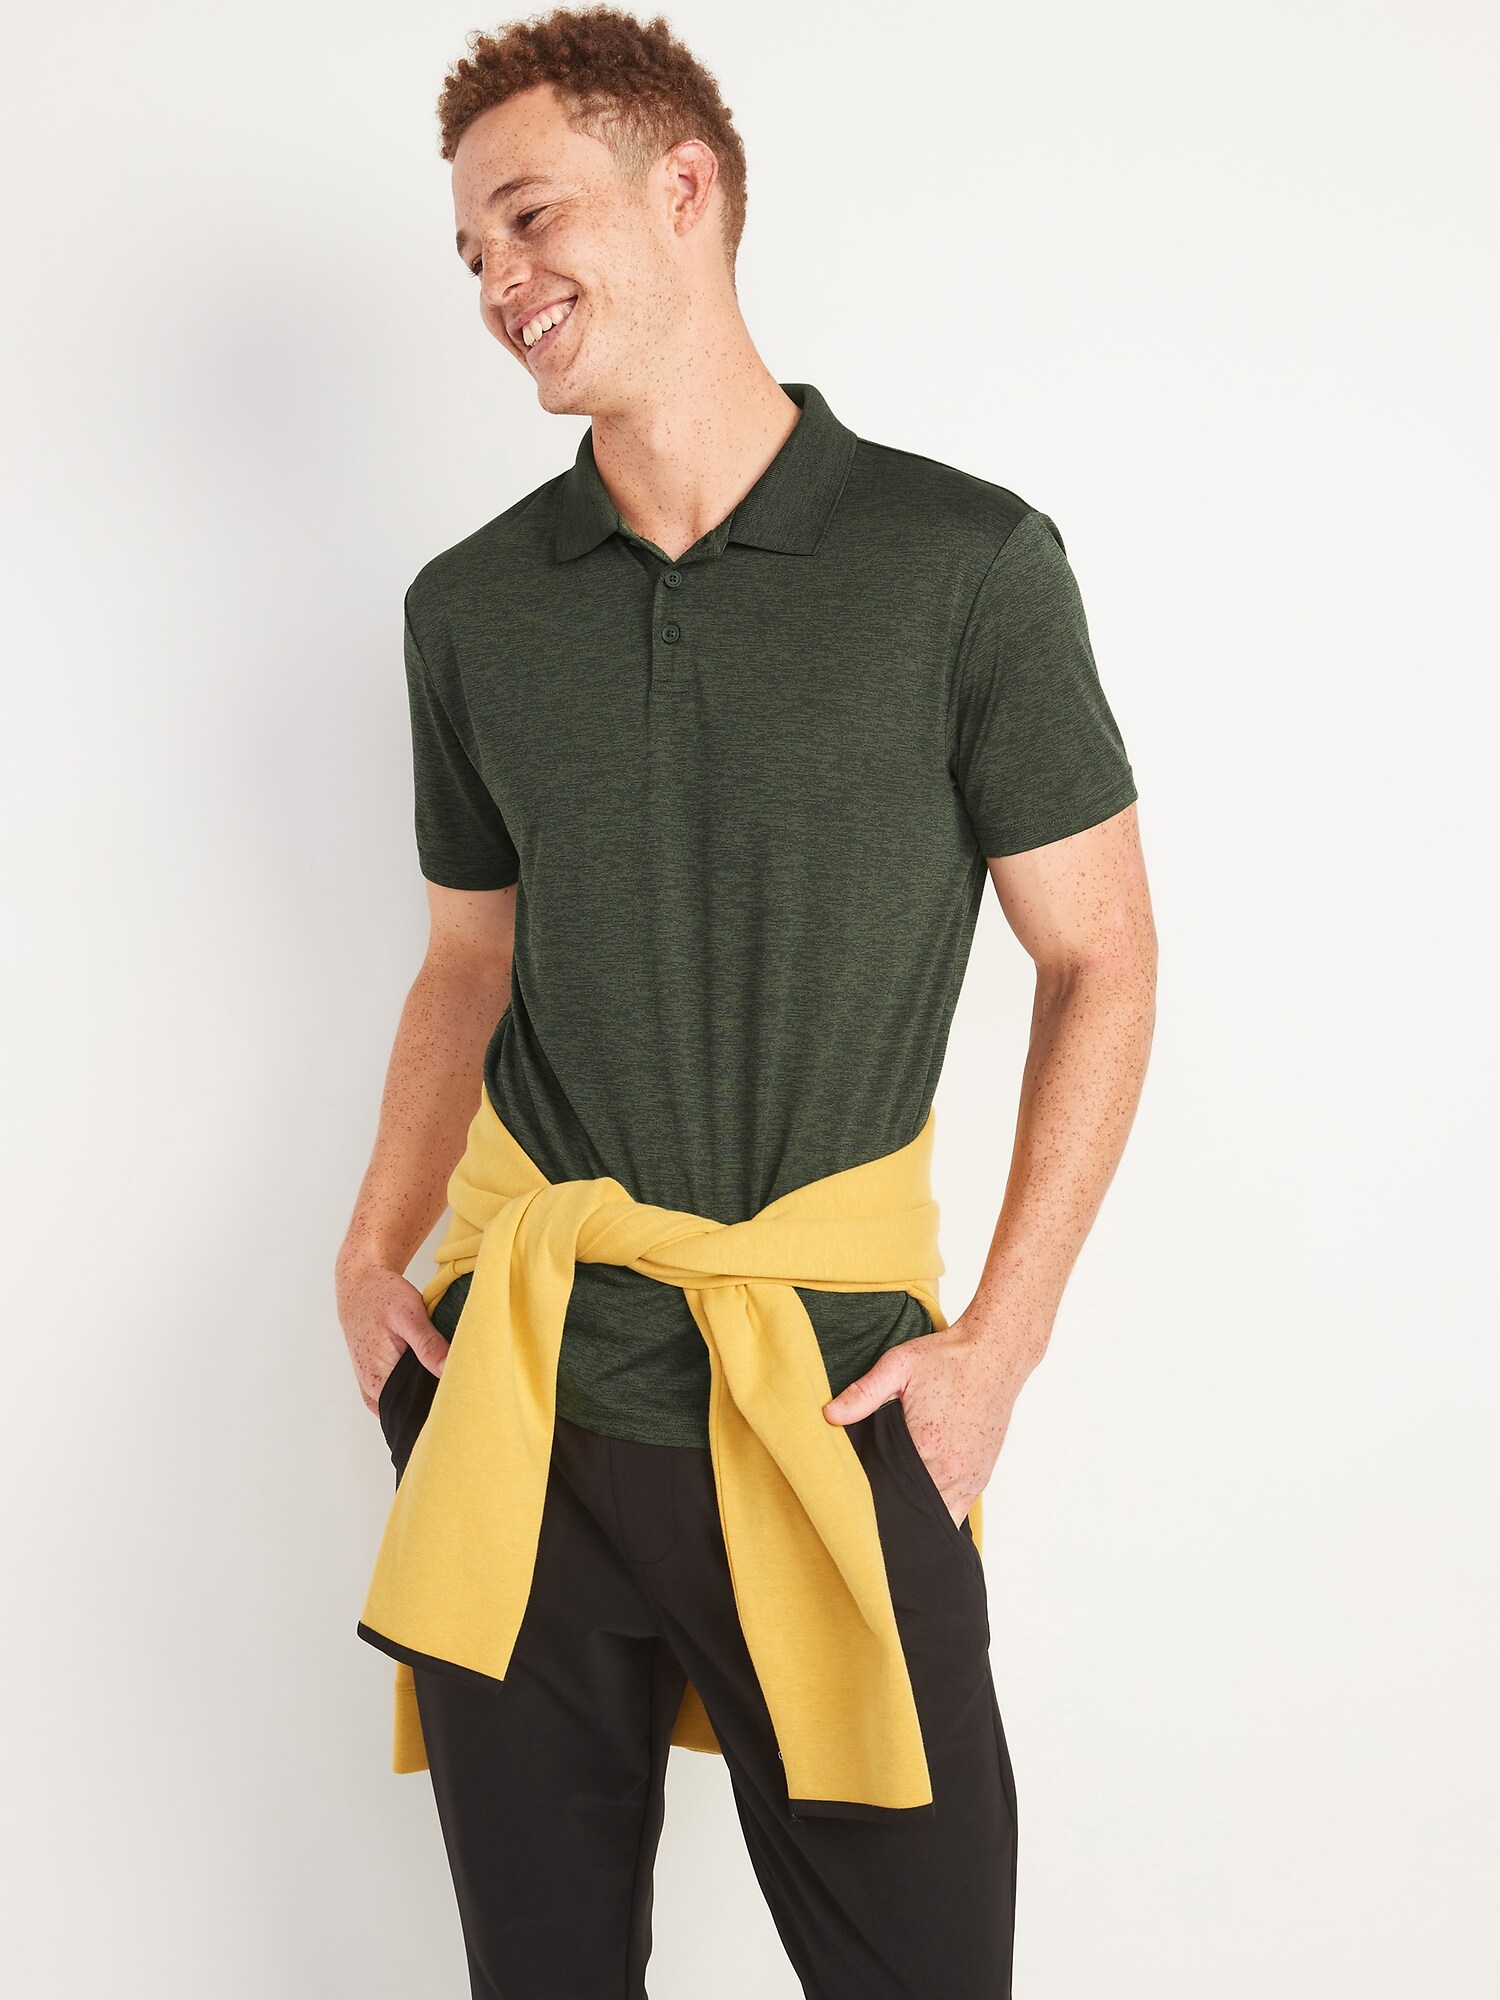 Go-Dry Cool Odor-Control Polo Shirt for Men